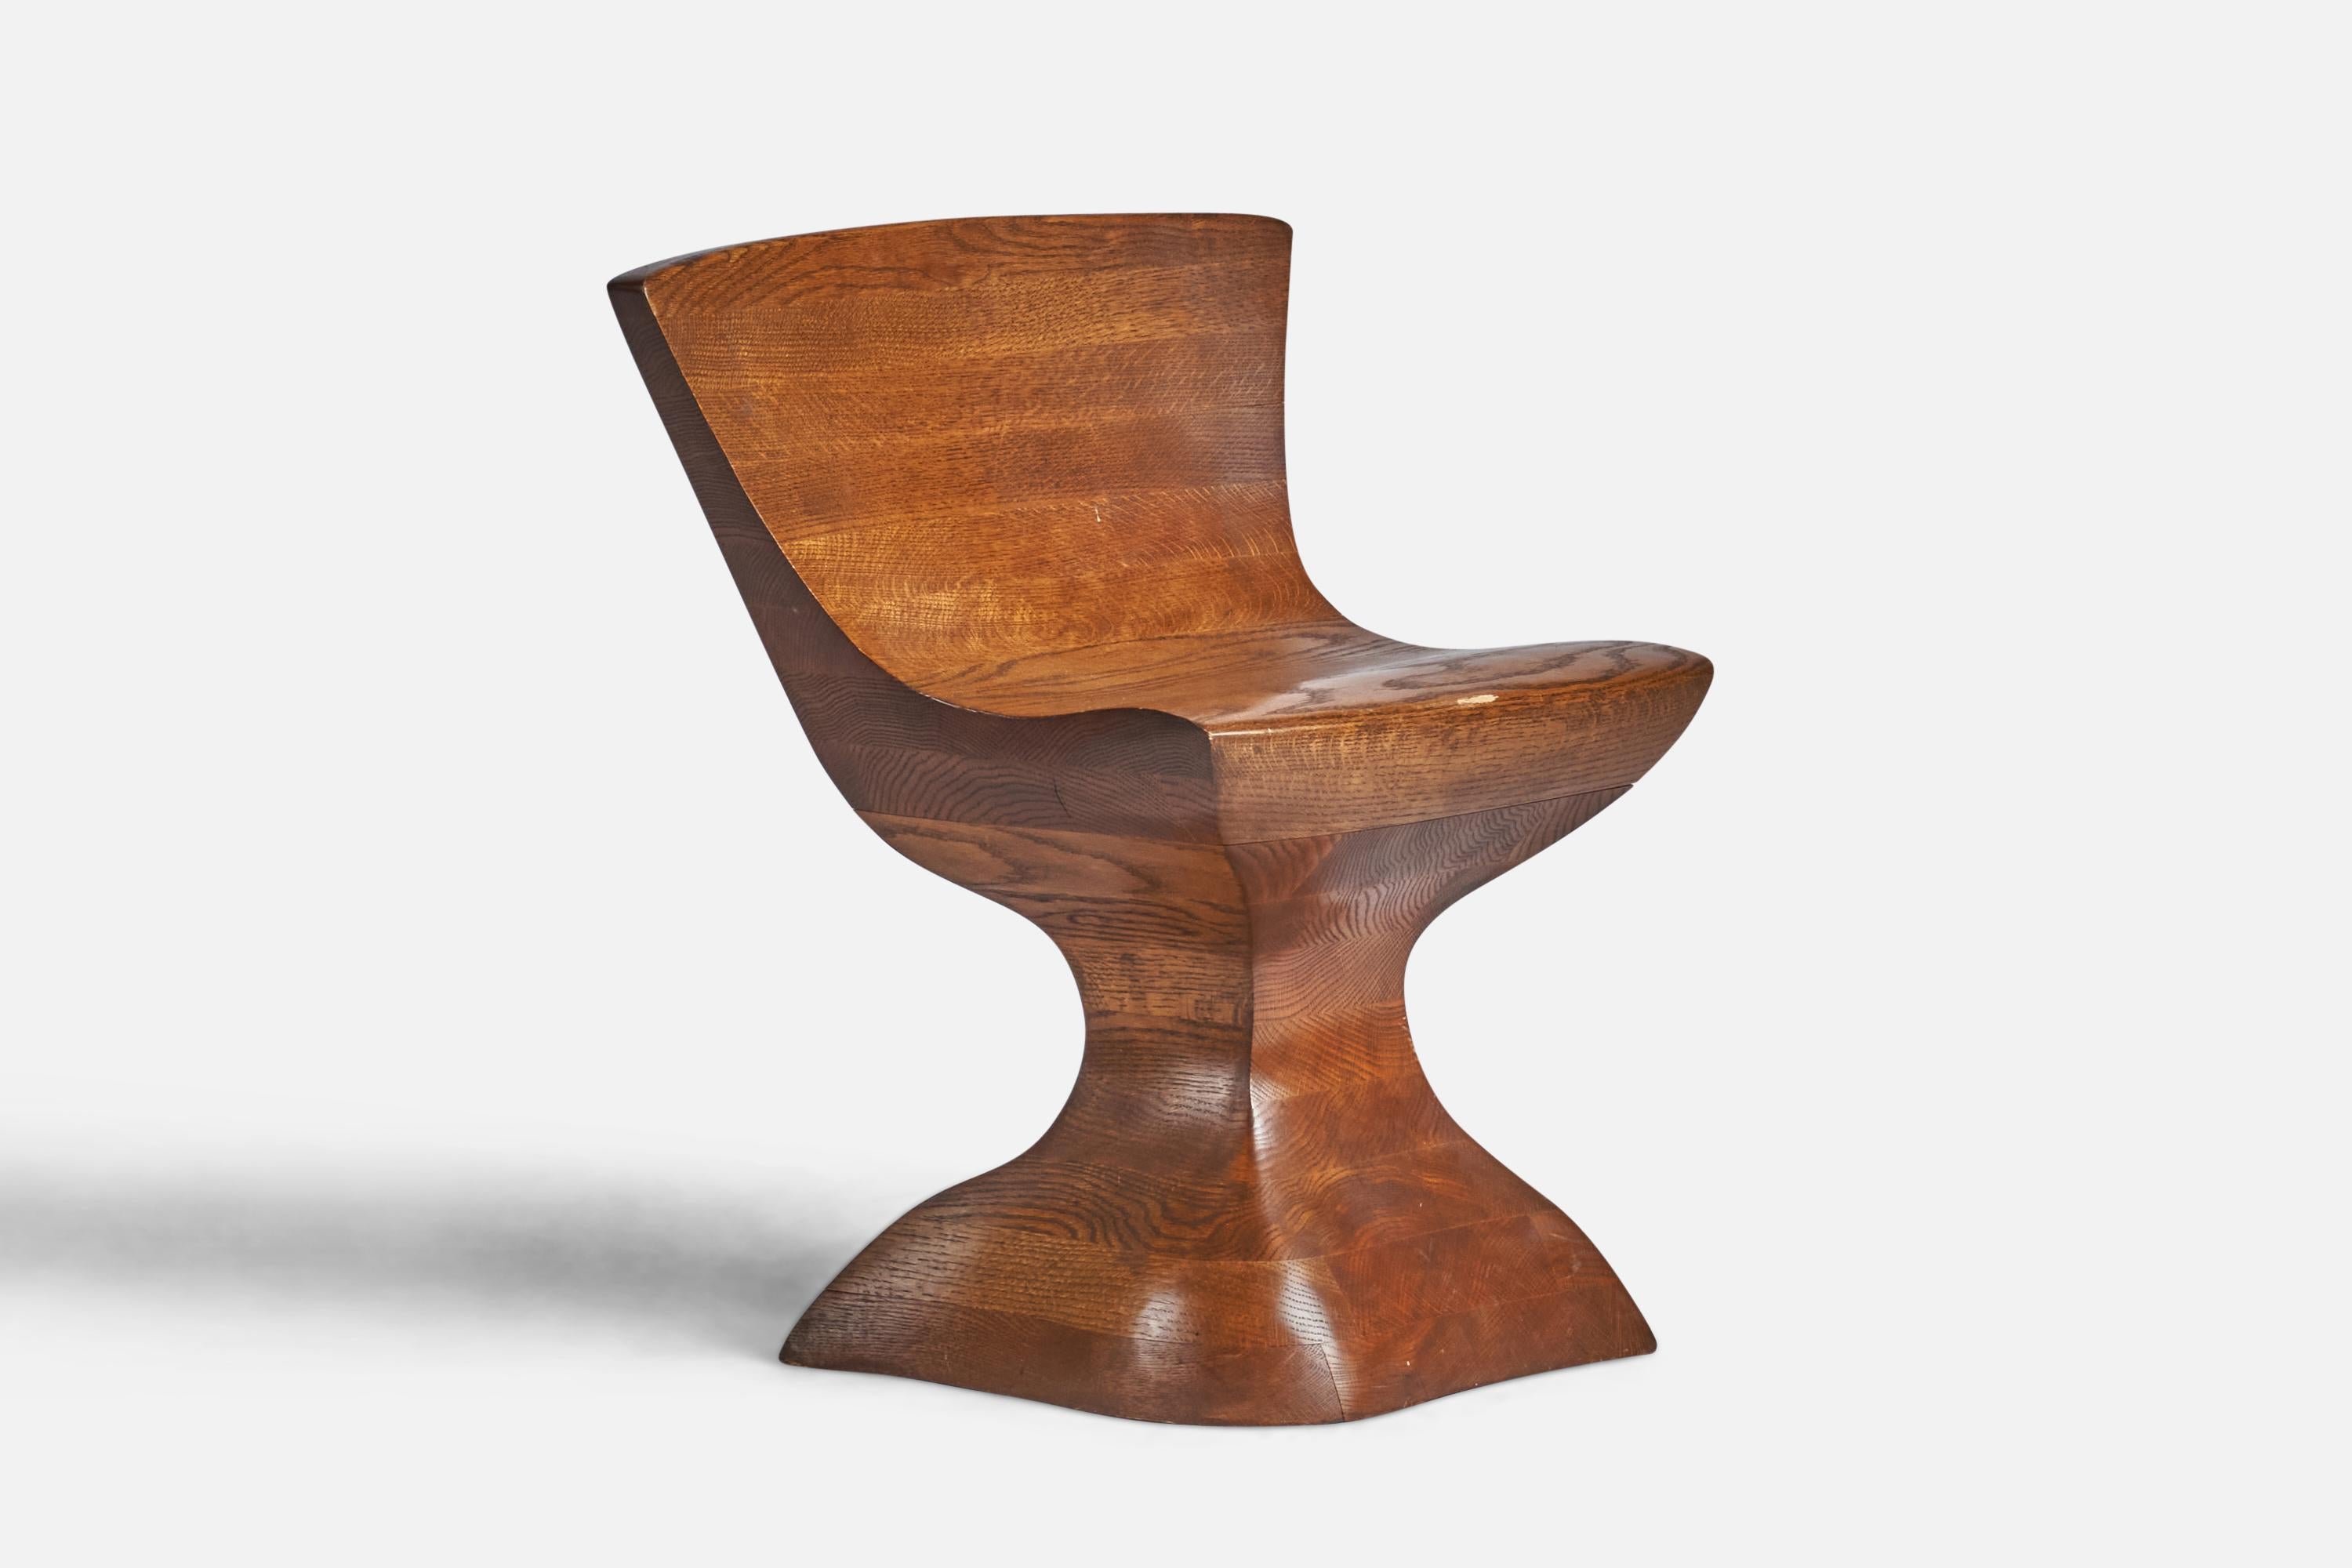 Ein Beistellstuhl aus laminierter und geschnitzter Eiche, entworfen und hergestellt in den USA, ca. 1980er Jahre.
17